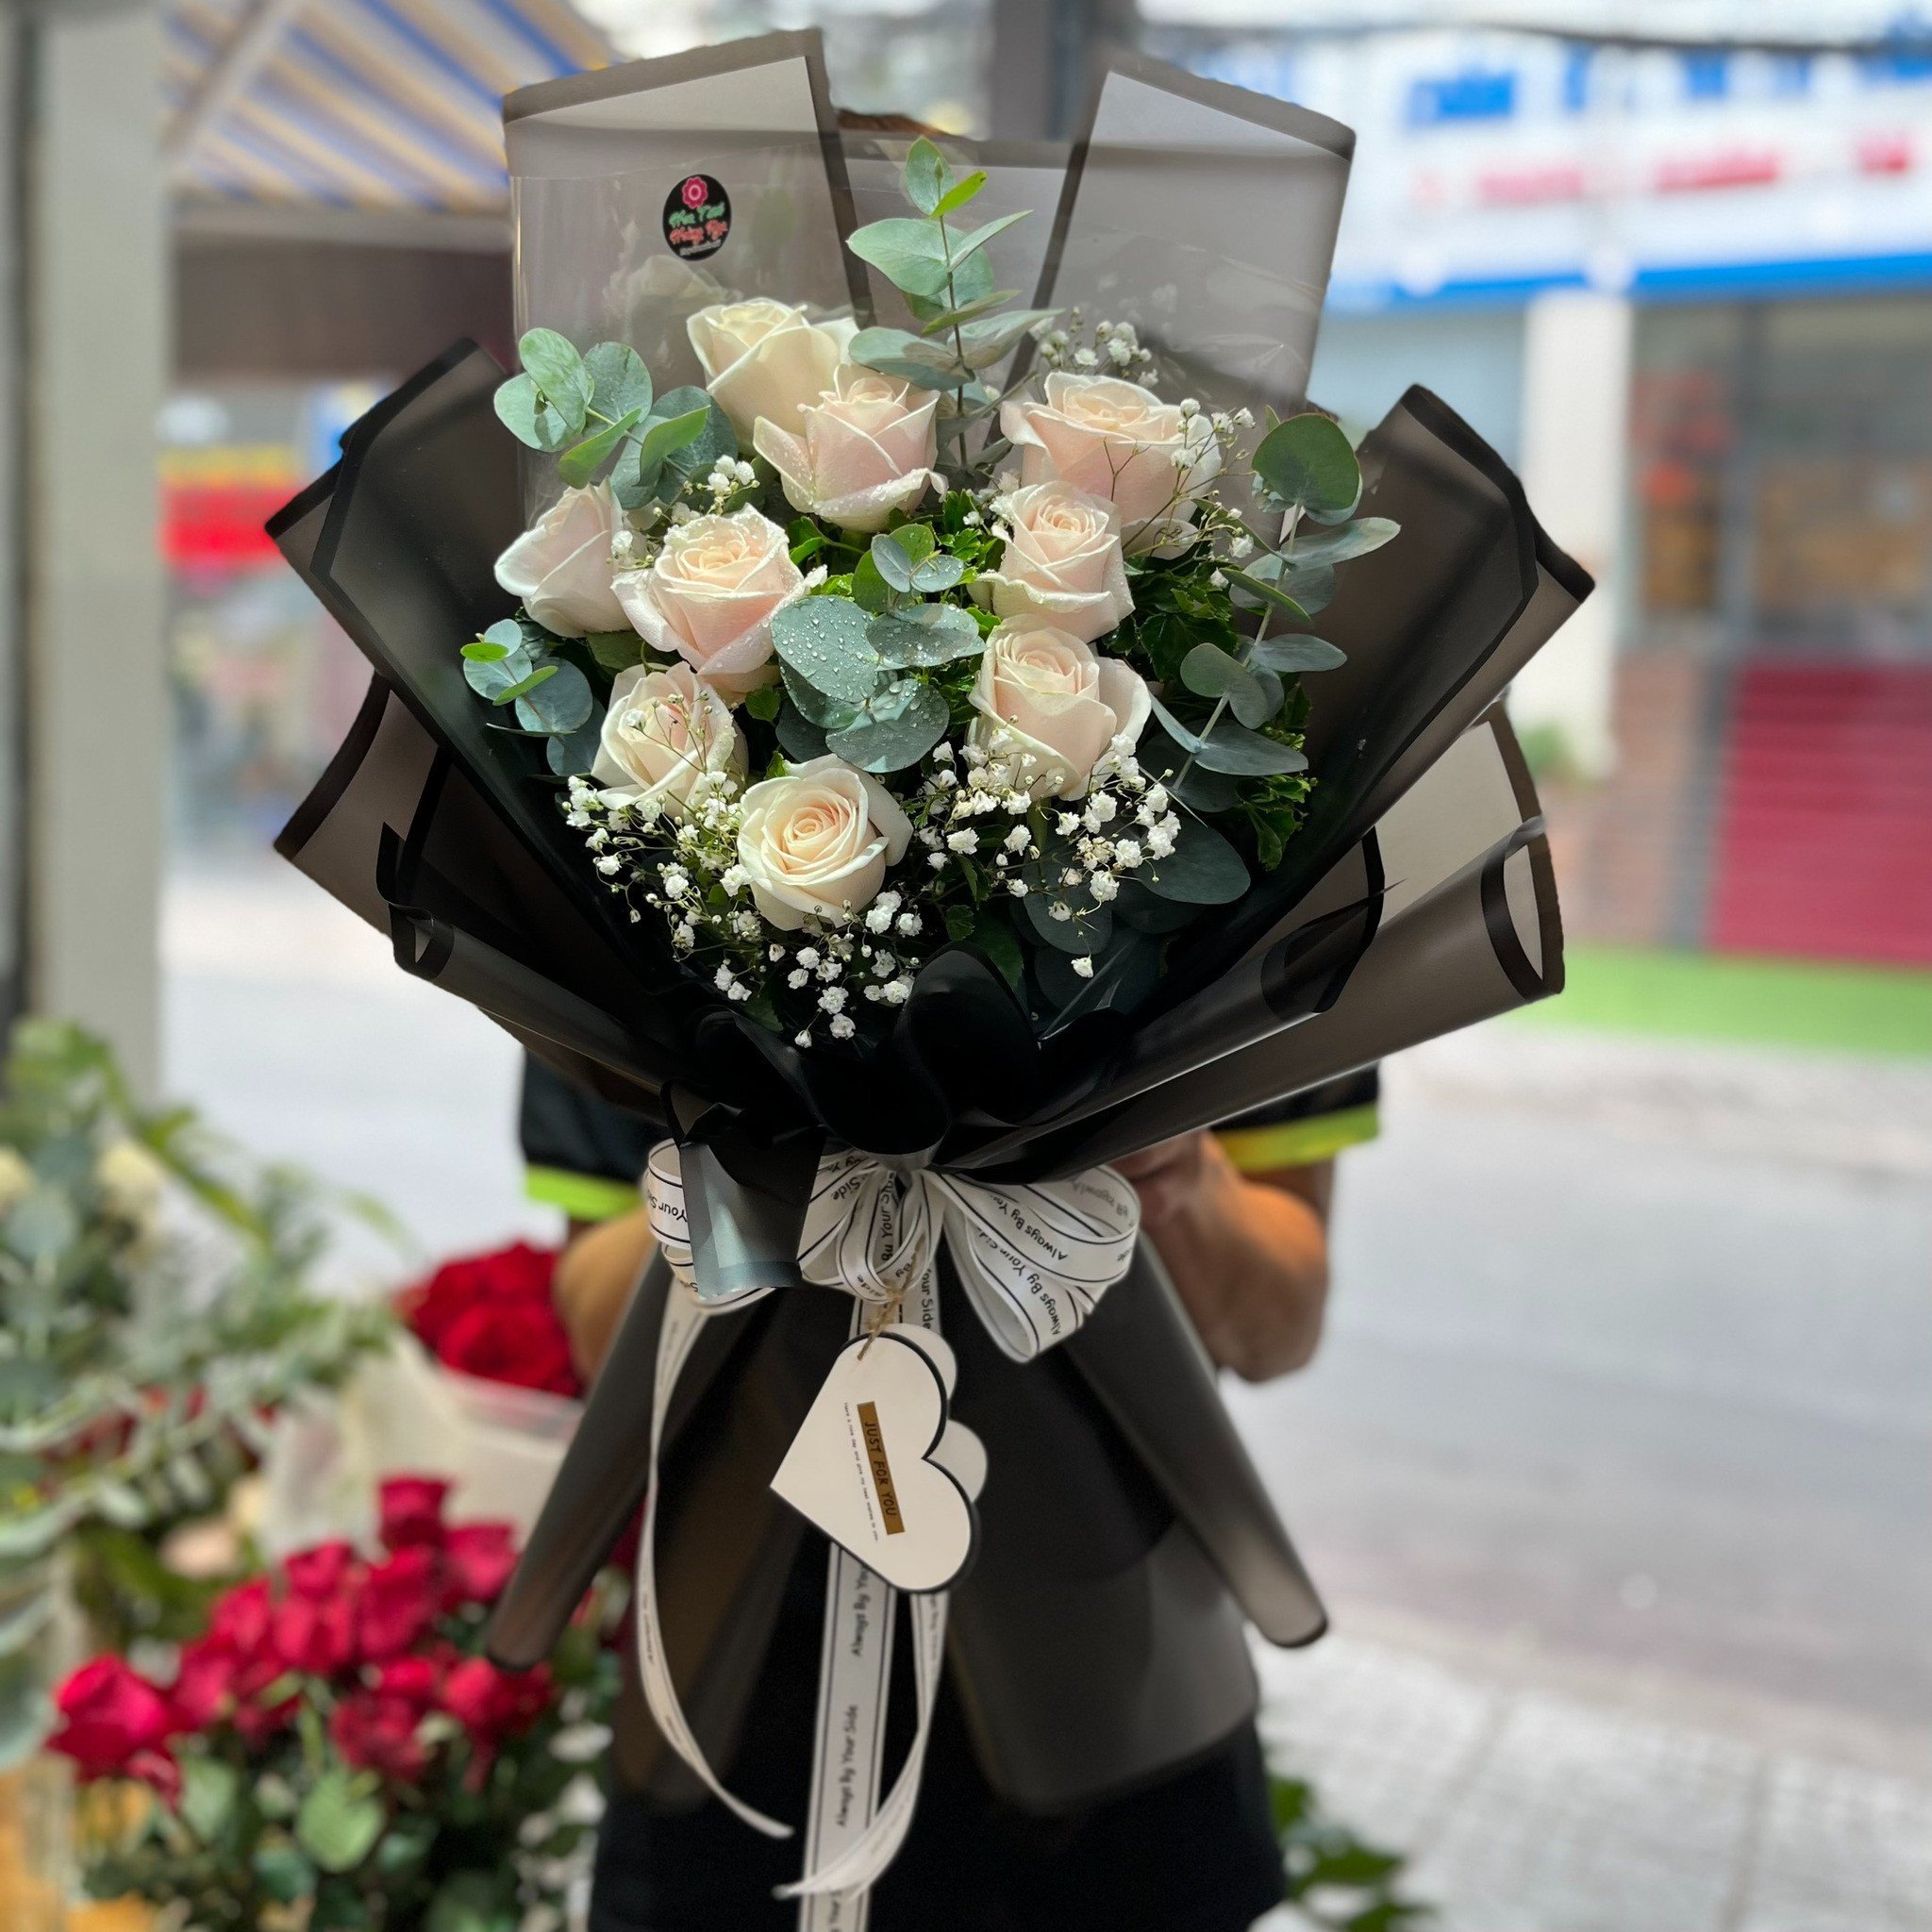 Mẫu bó hoa sinh nhật tại 	Phường Hùng Vương	Quận Hồng Bàng	Hải Phòng